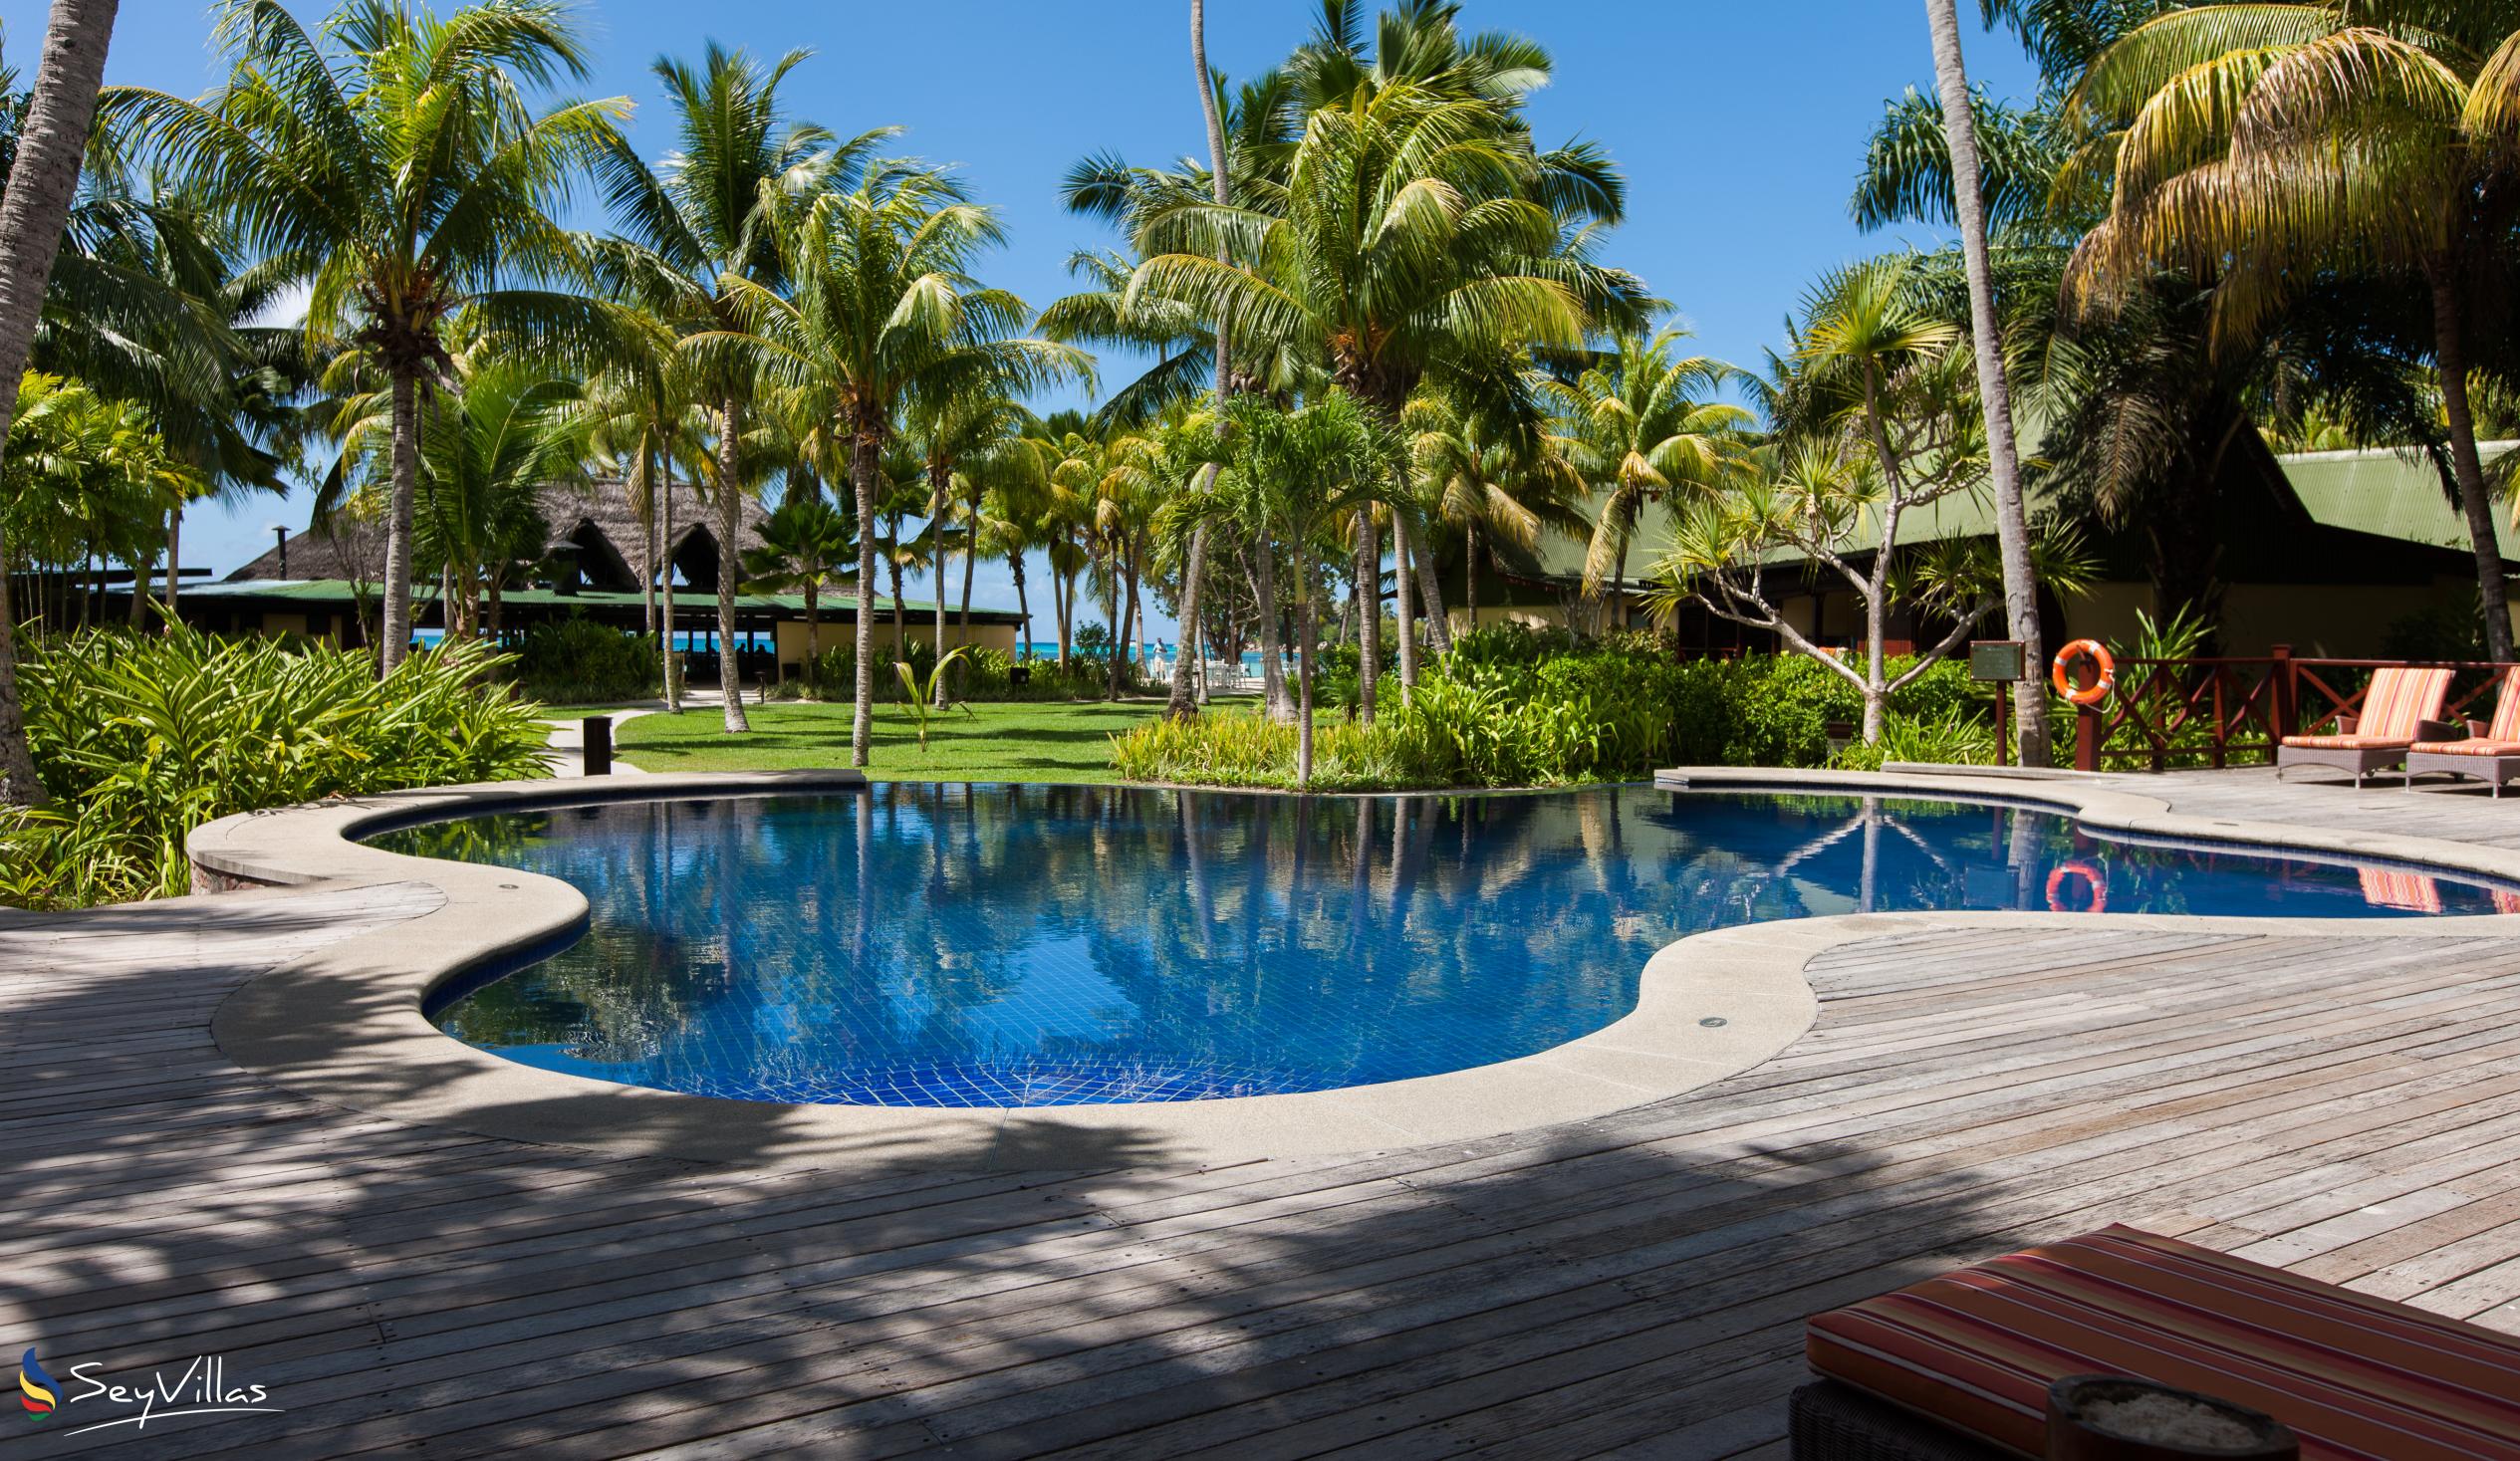 Foto 18: Paradise Sun Hotel - Aussenbereich - Praslin (Seychellen)